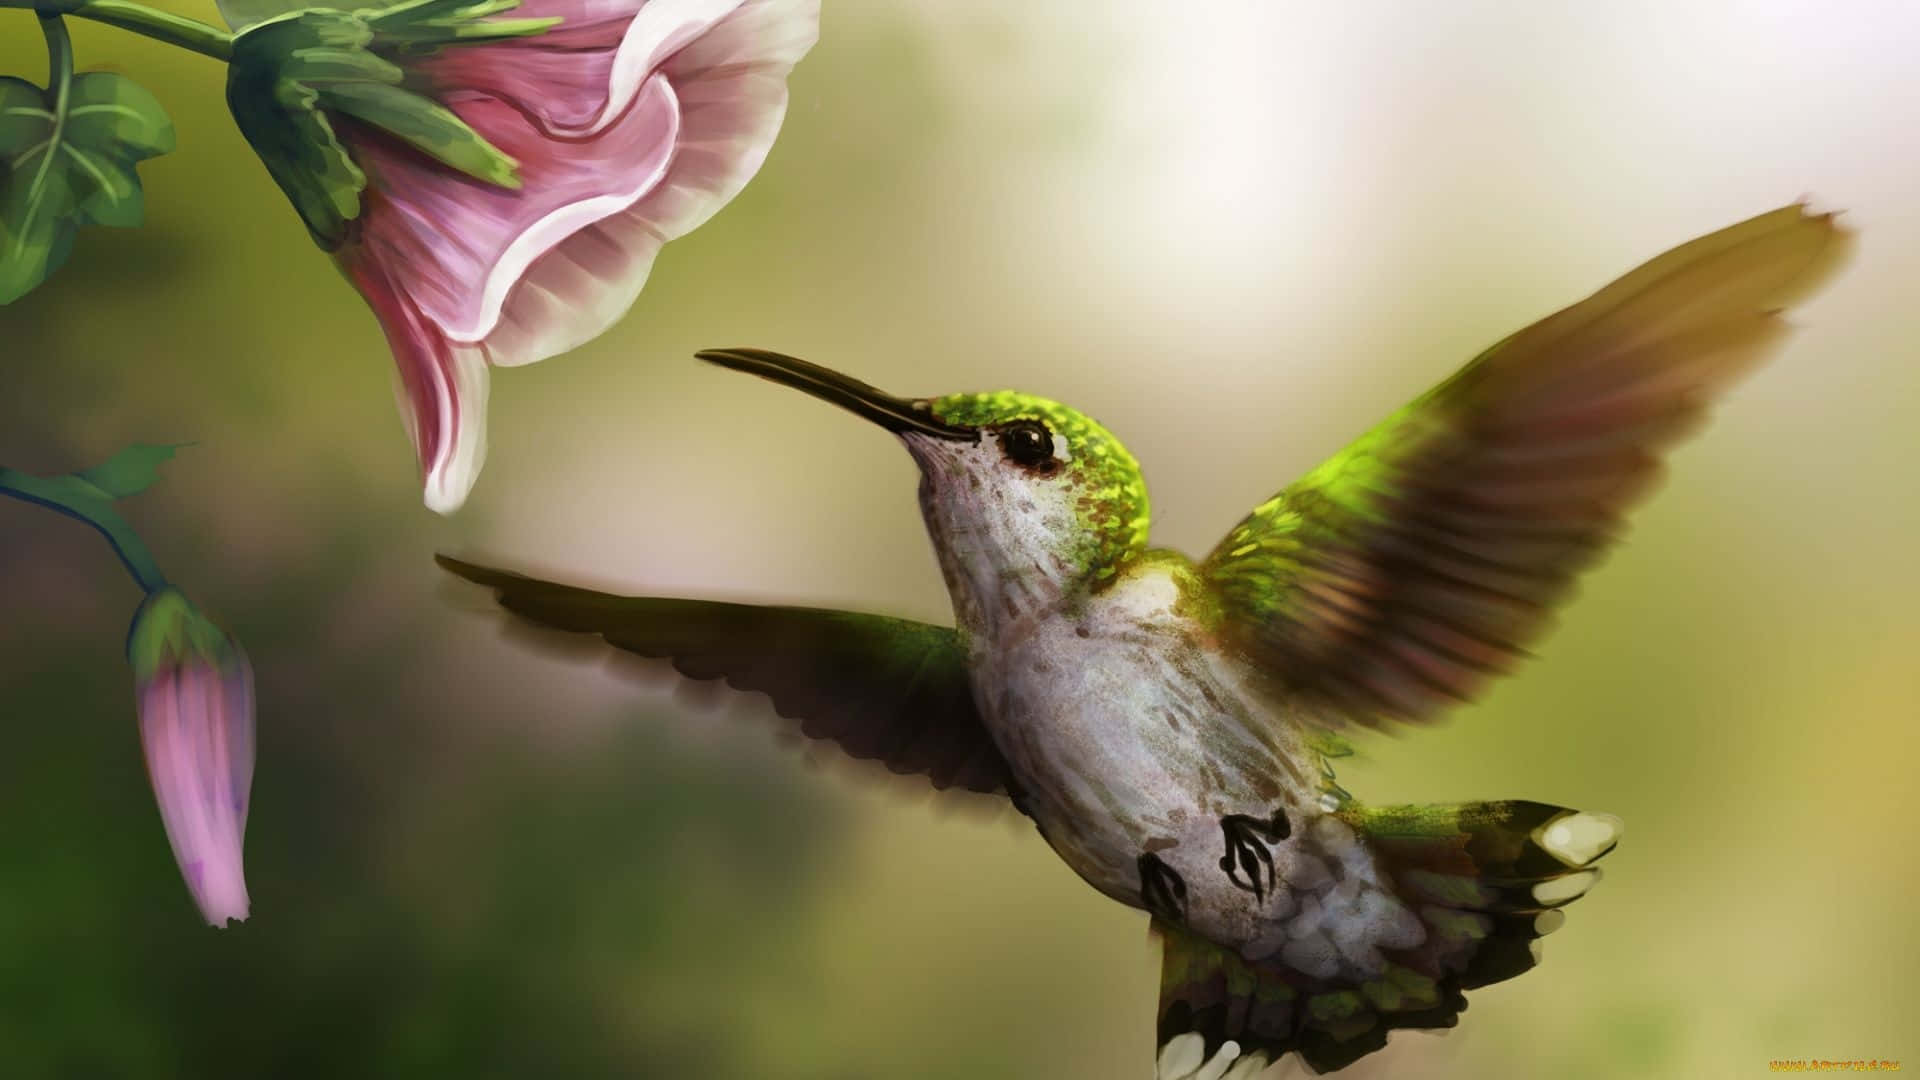 Fåen Närmare Titt På Naturens Skönhet Med Denna Vackra Bild På En Kolibri.